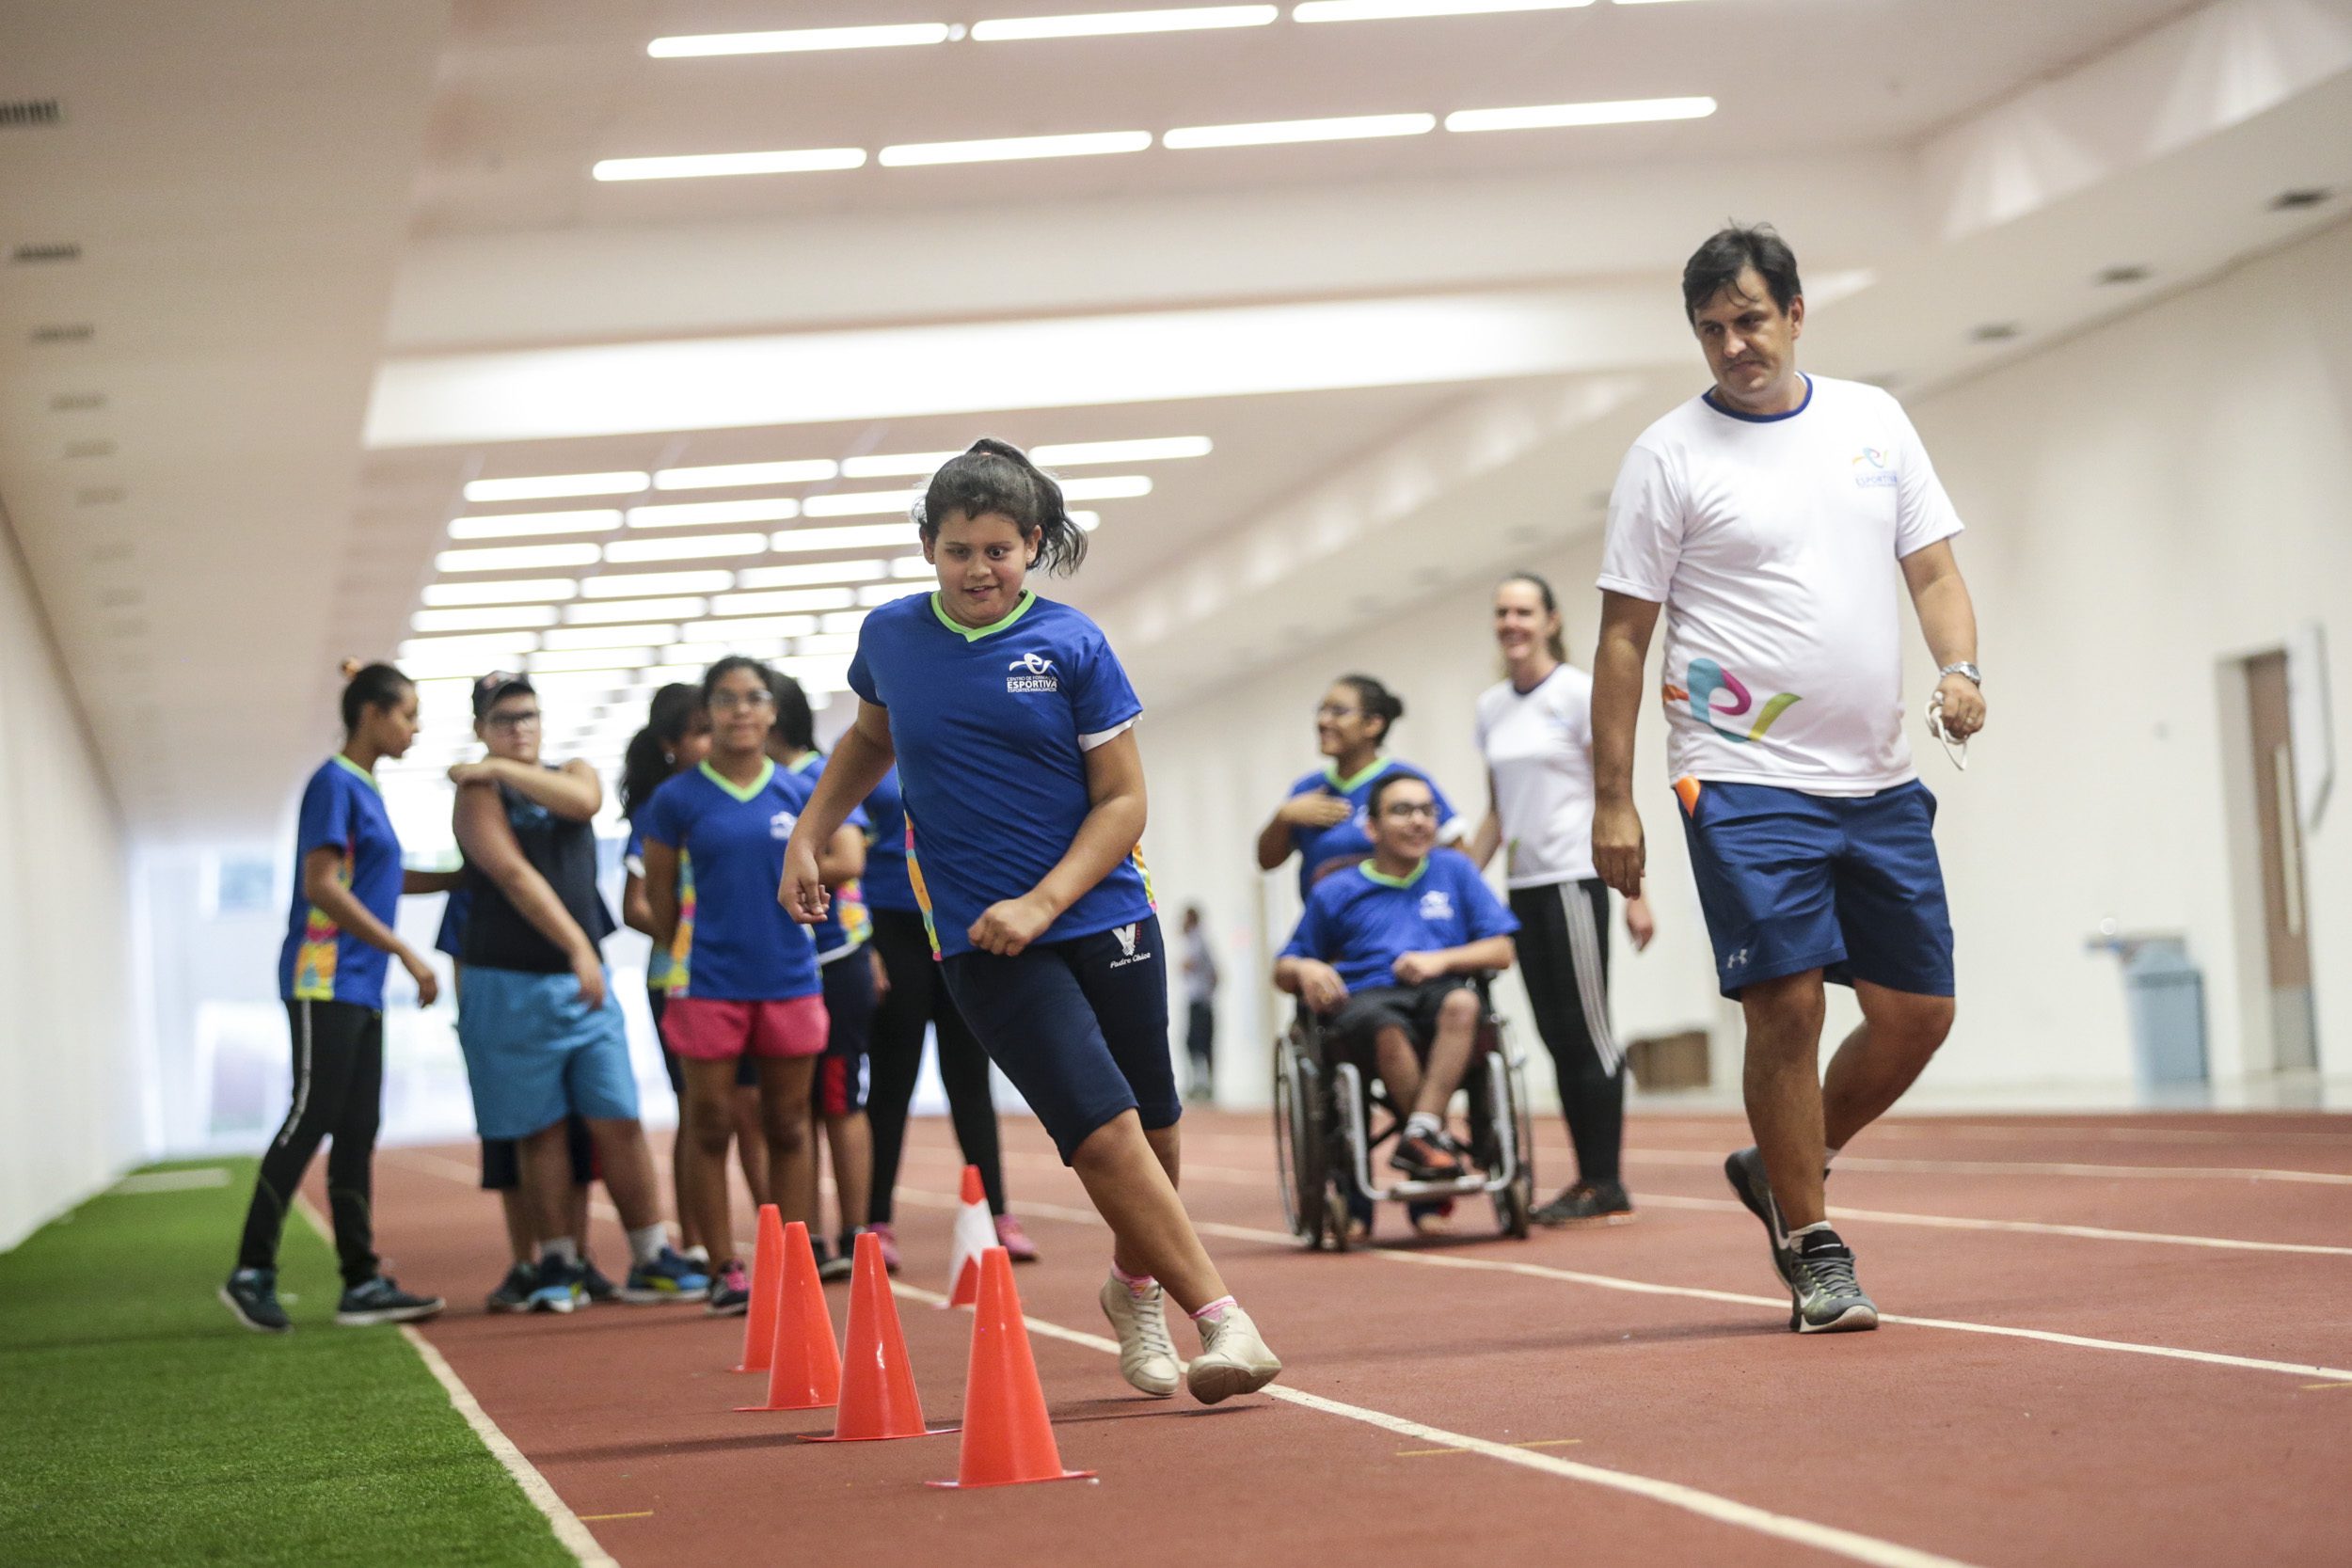 São Paulo – SP 03.04.2018 - Centro de formação esportiva, esportes paralímpicos. Foto: Leandro Martins/MPIX/CPB